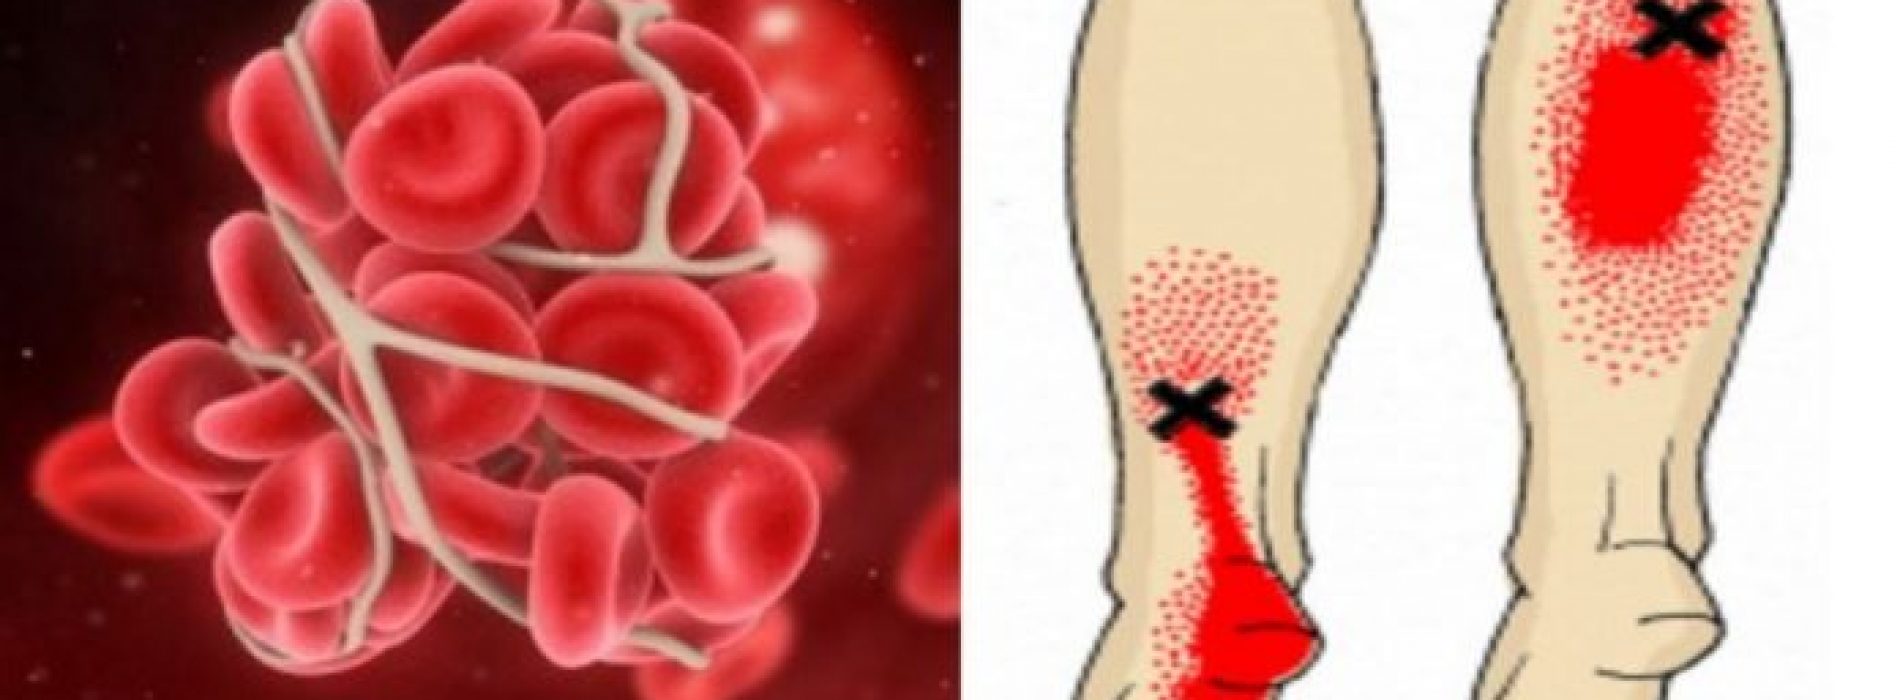 8 makkelijk-te-missen tekenen die je misschien wel waarschuwen voor een bloedprop/trombose